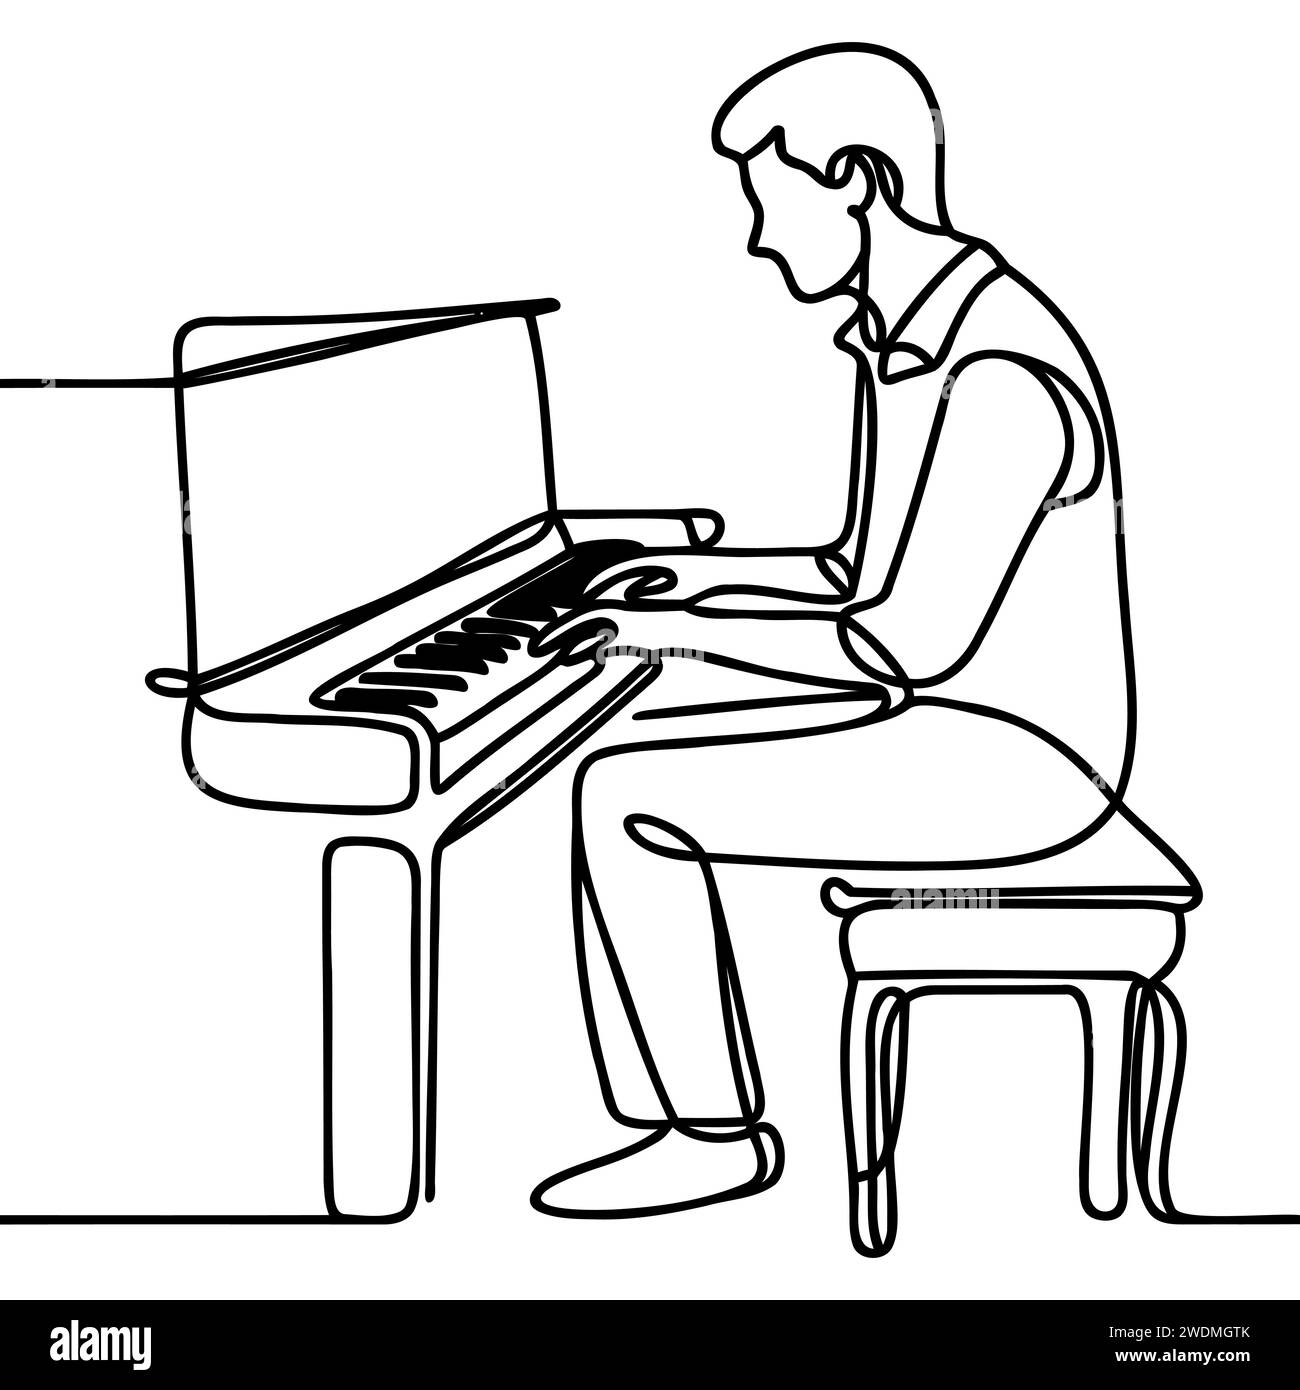 un dessin au trait continu d'un pianiste jouant d'un piano à queue classique. Illustration de Vecteur